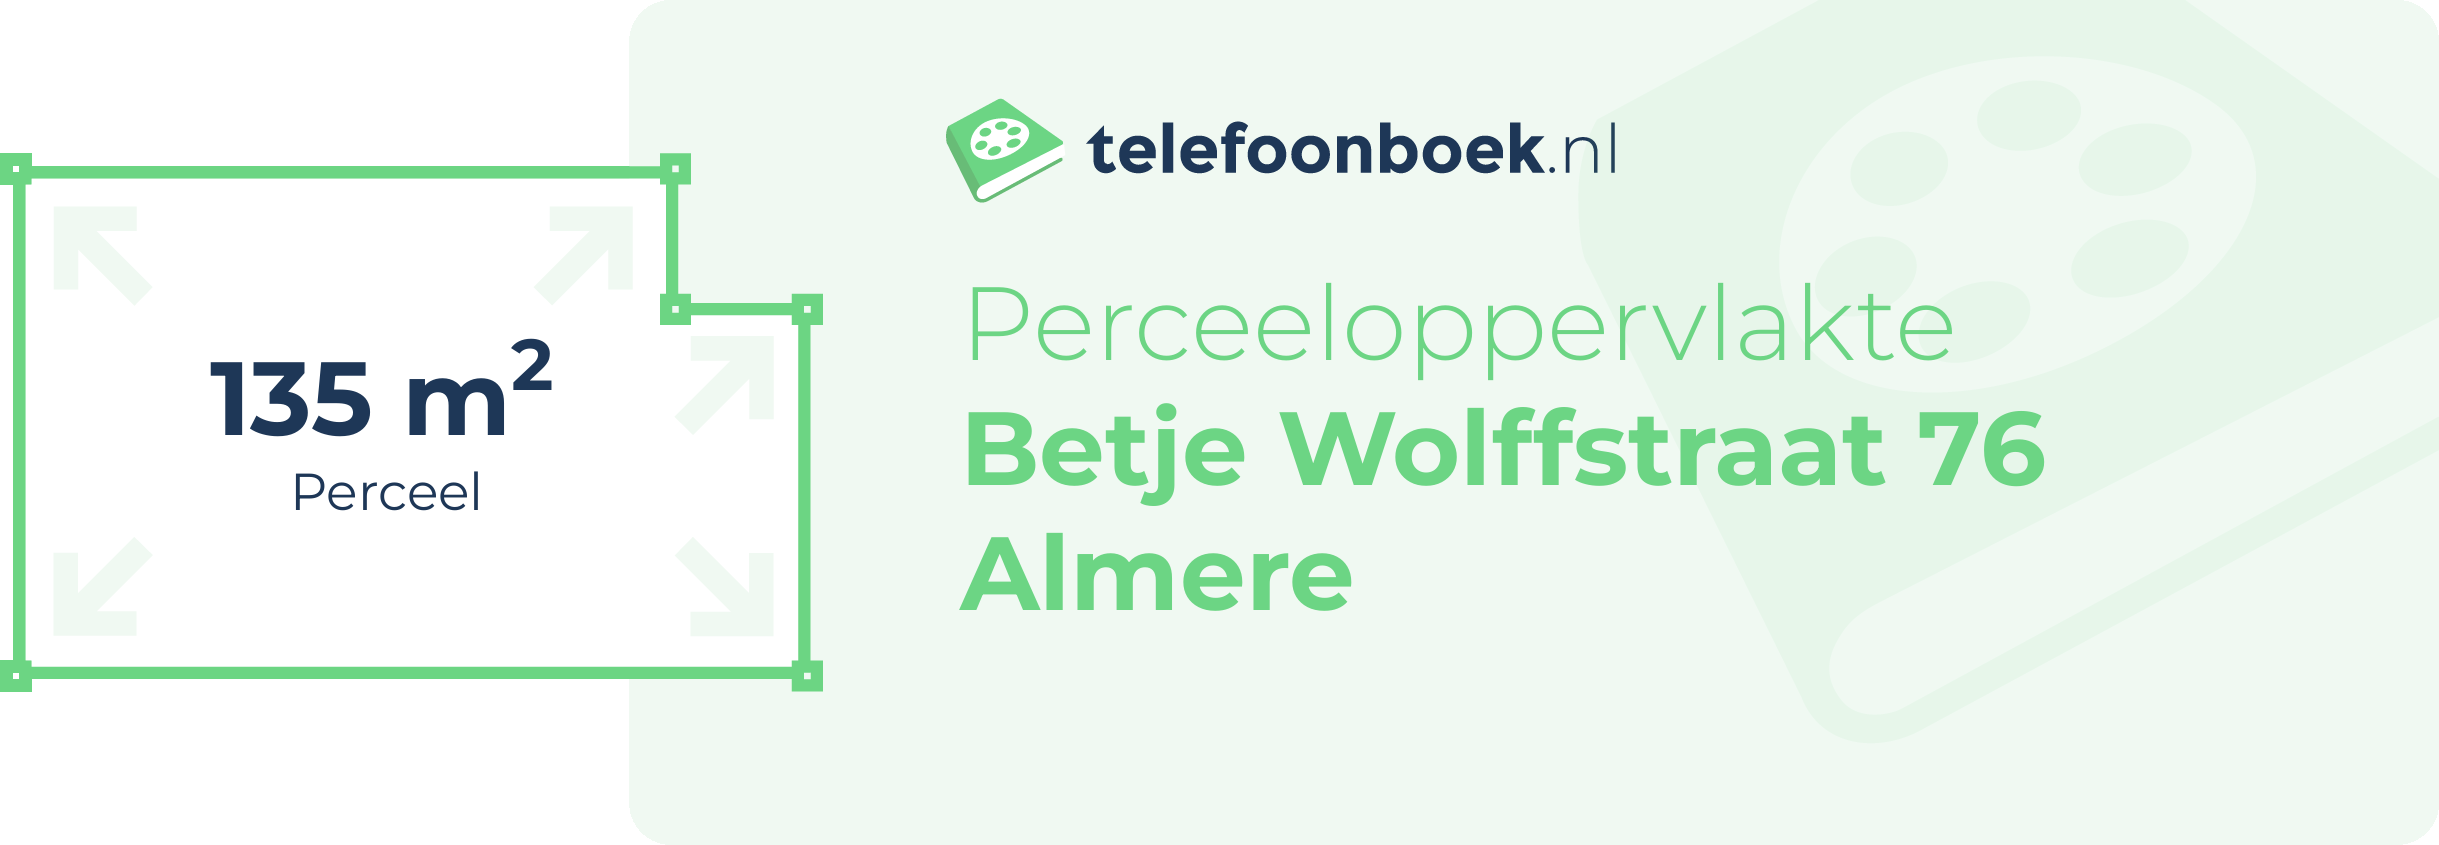 Perceeloppervlakte Betje Wolffstraat 76 Almere